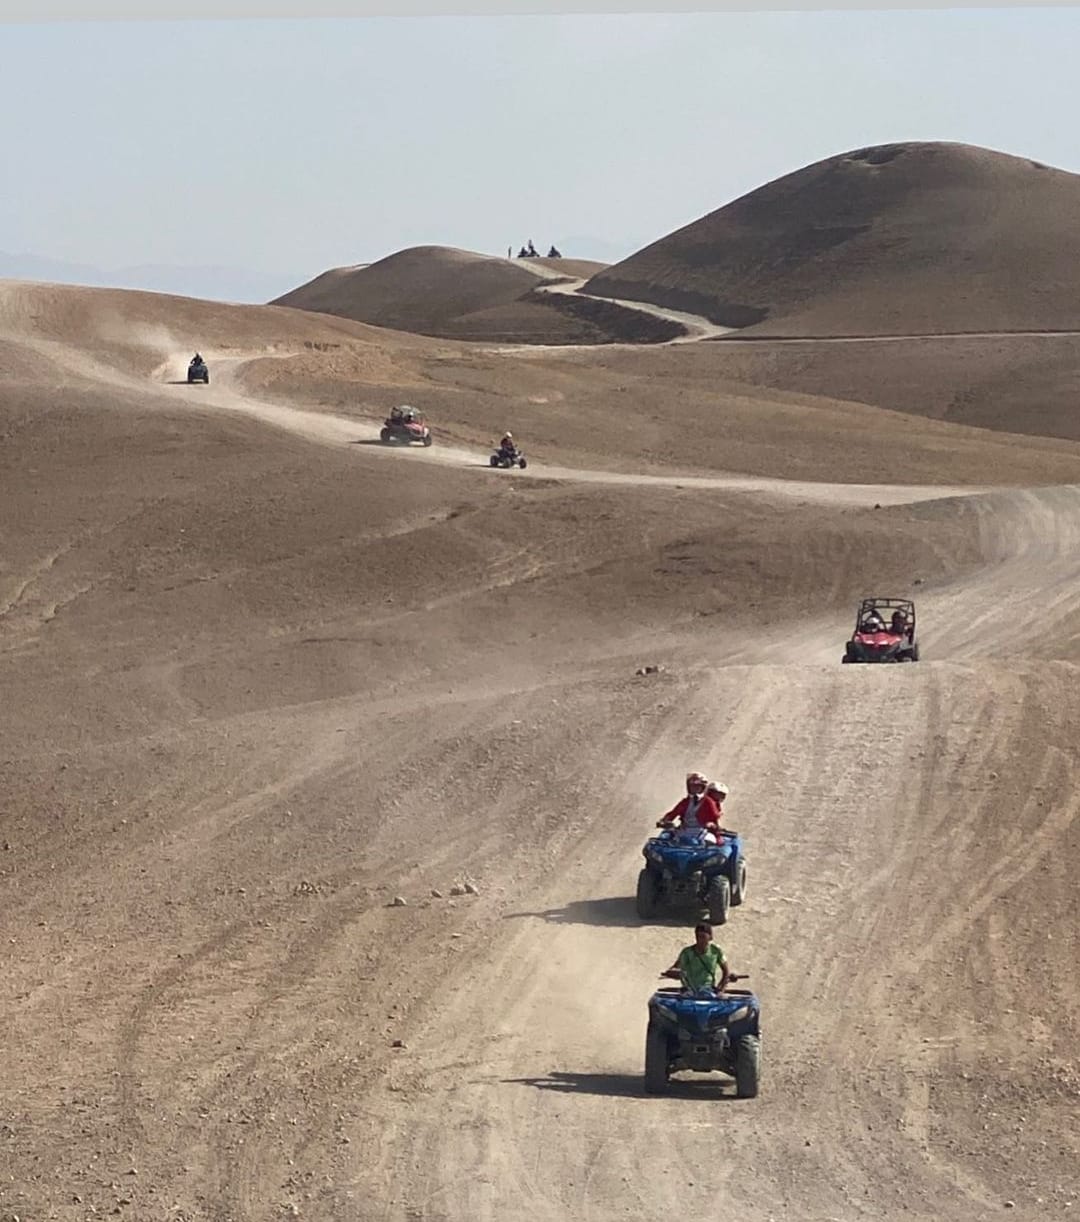 Un quad rouge conduit dans le désert d'Agafay à Marrakech, avec des montagnes en arrière-plan.